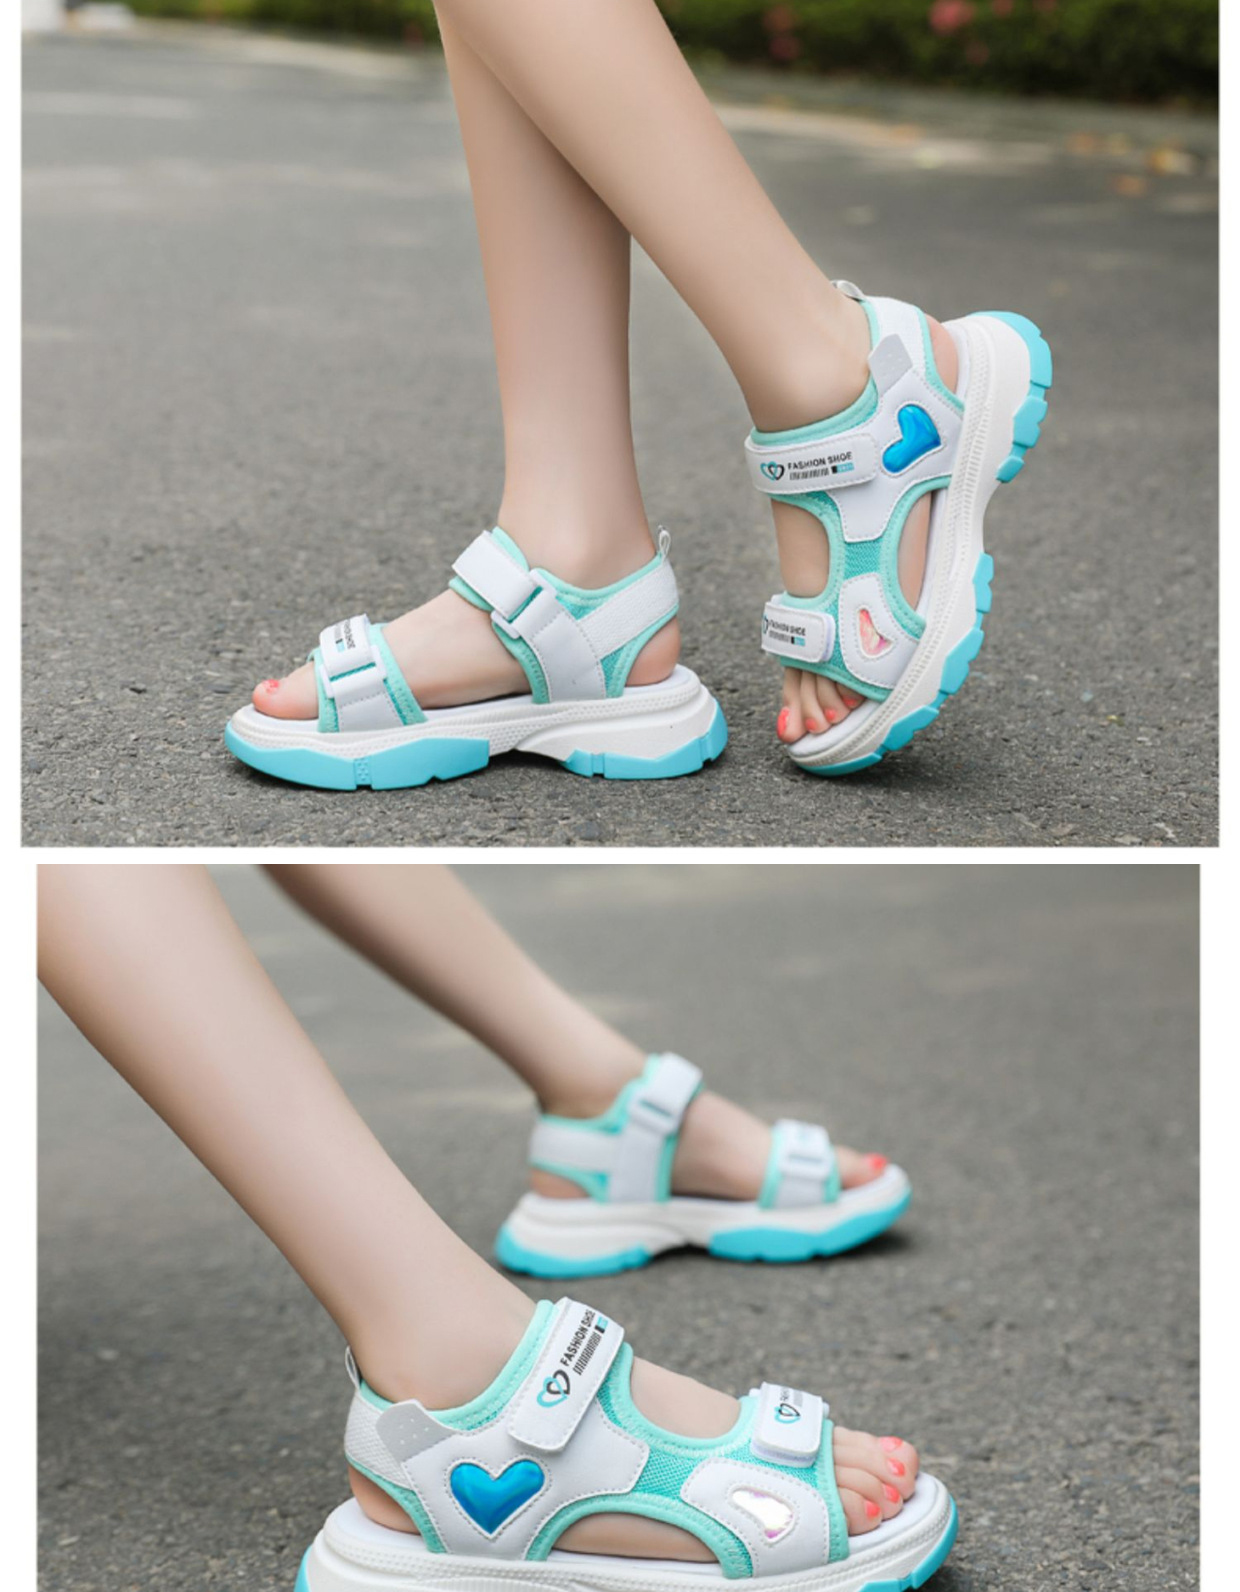 Giày Sandals đế bằng cho bé gái, giày thể thao siêu nhẹ, chống trơn – GSD9008